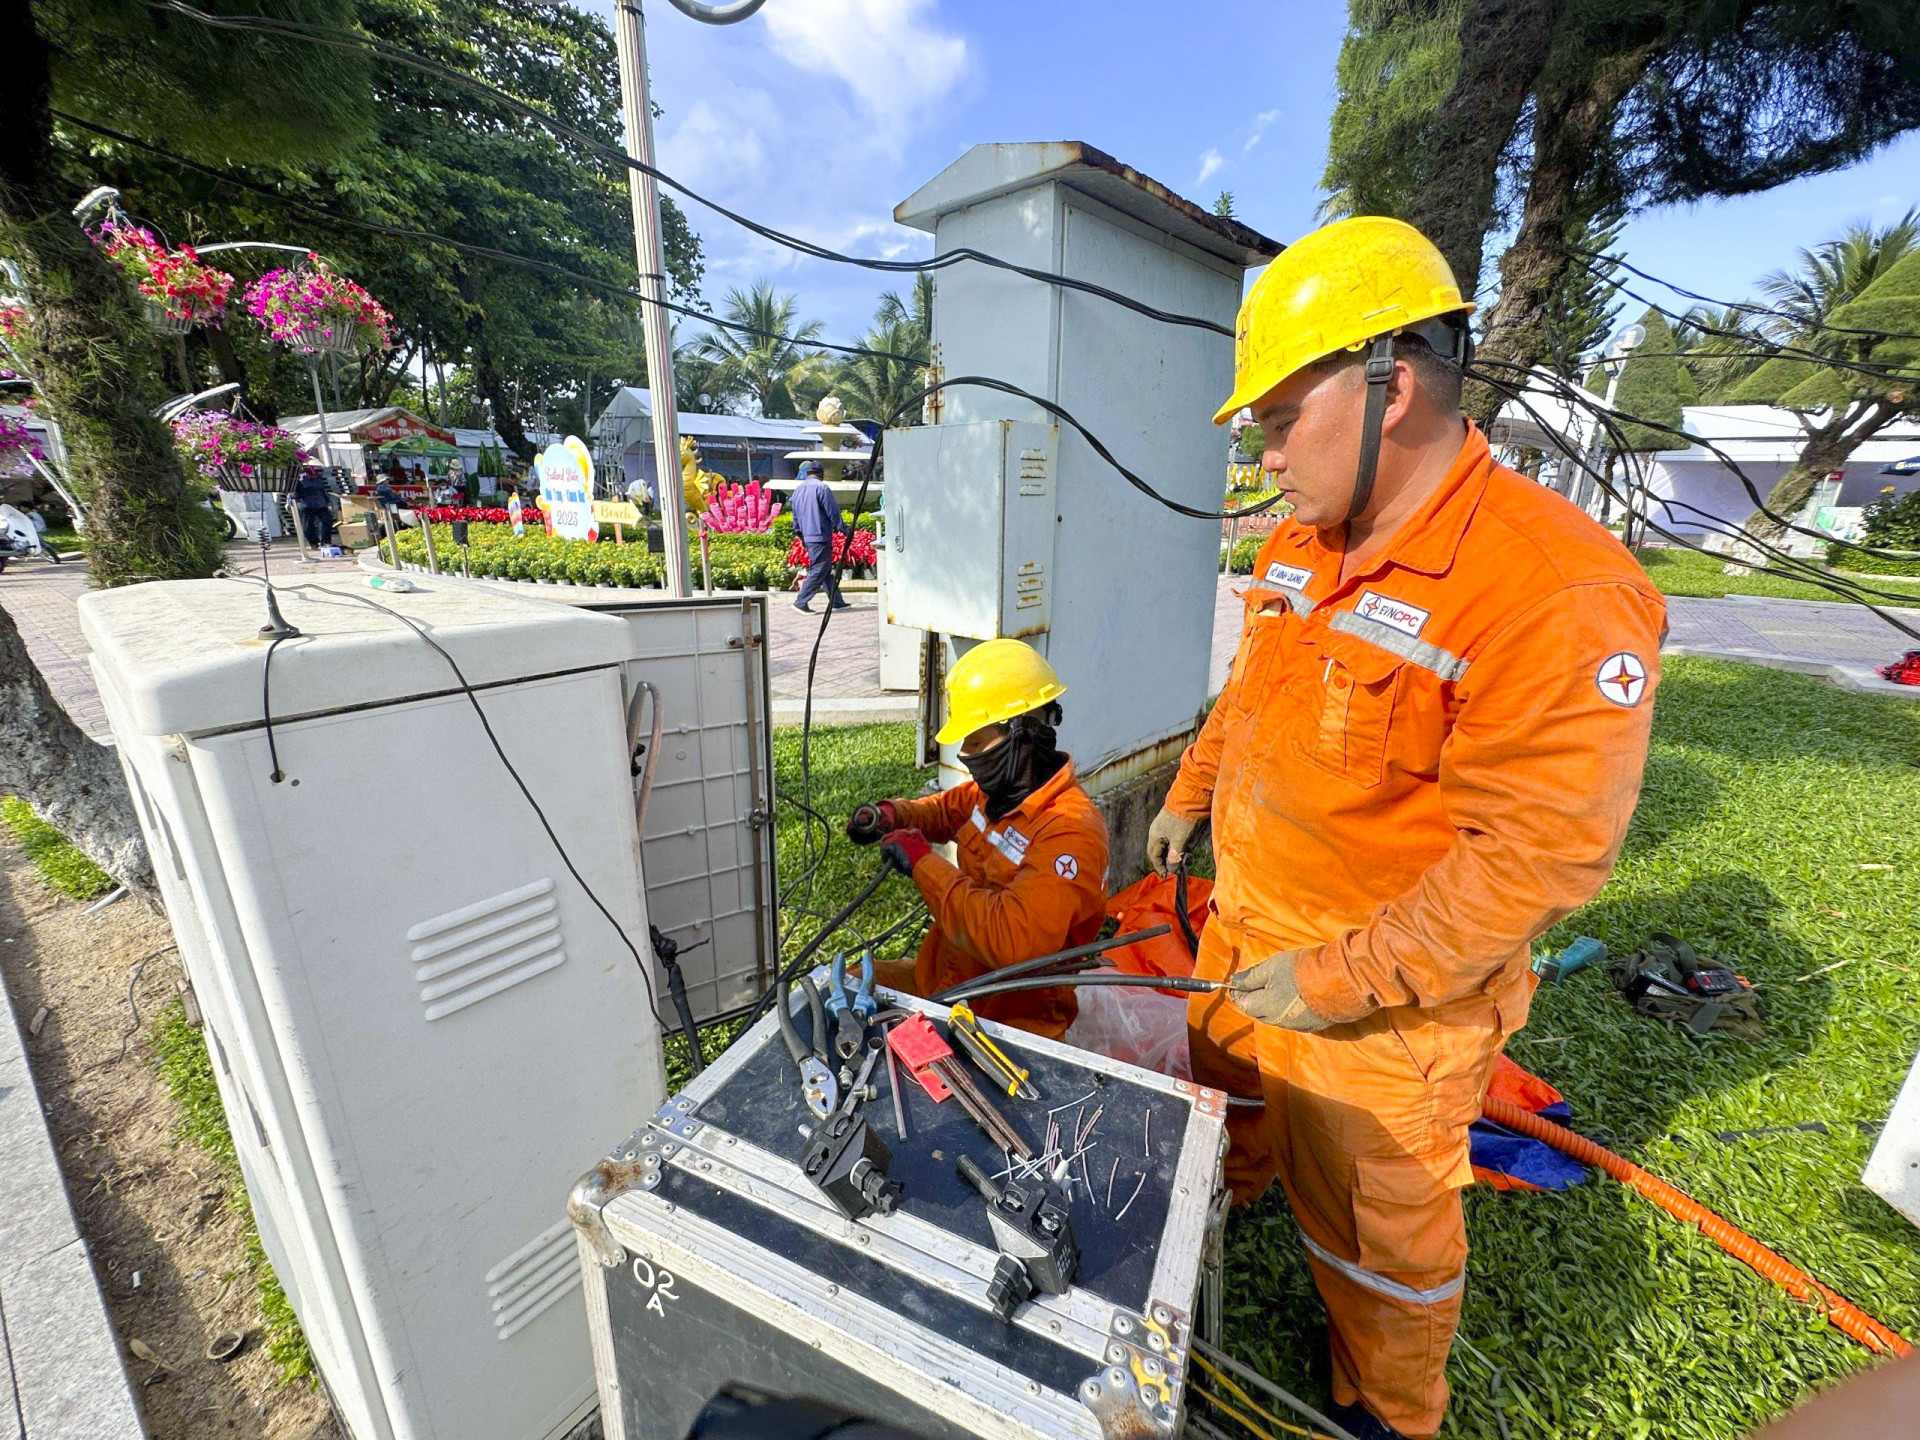 Lắp đặt Trạm biến áp lưu động để đảm bảo cung cấp điện cho các sự kiện tại Quảng trường 2 tháng 4, TP. Nha Trang.

